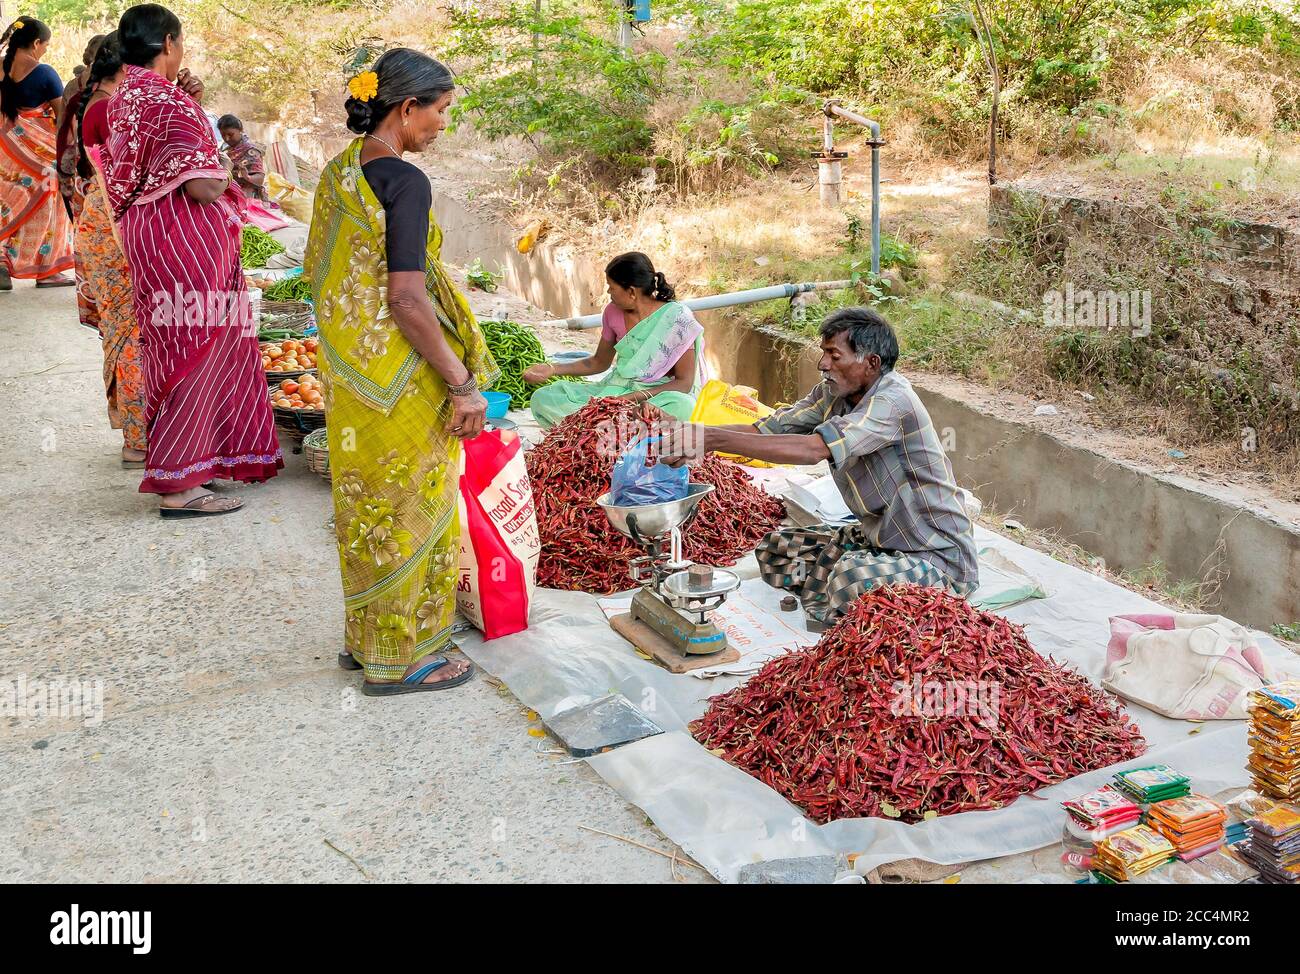 Puttaparthi, Andhra Pradesh, Indien - 13. Januar 2013: Inder verkauft roten Pfeffer auf dem Straßenmarkt von Puttaparthi. Stockfoto